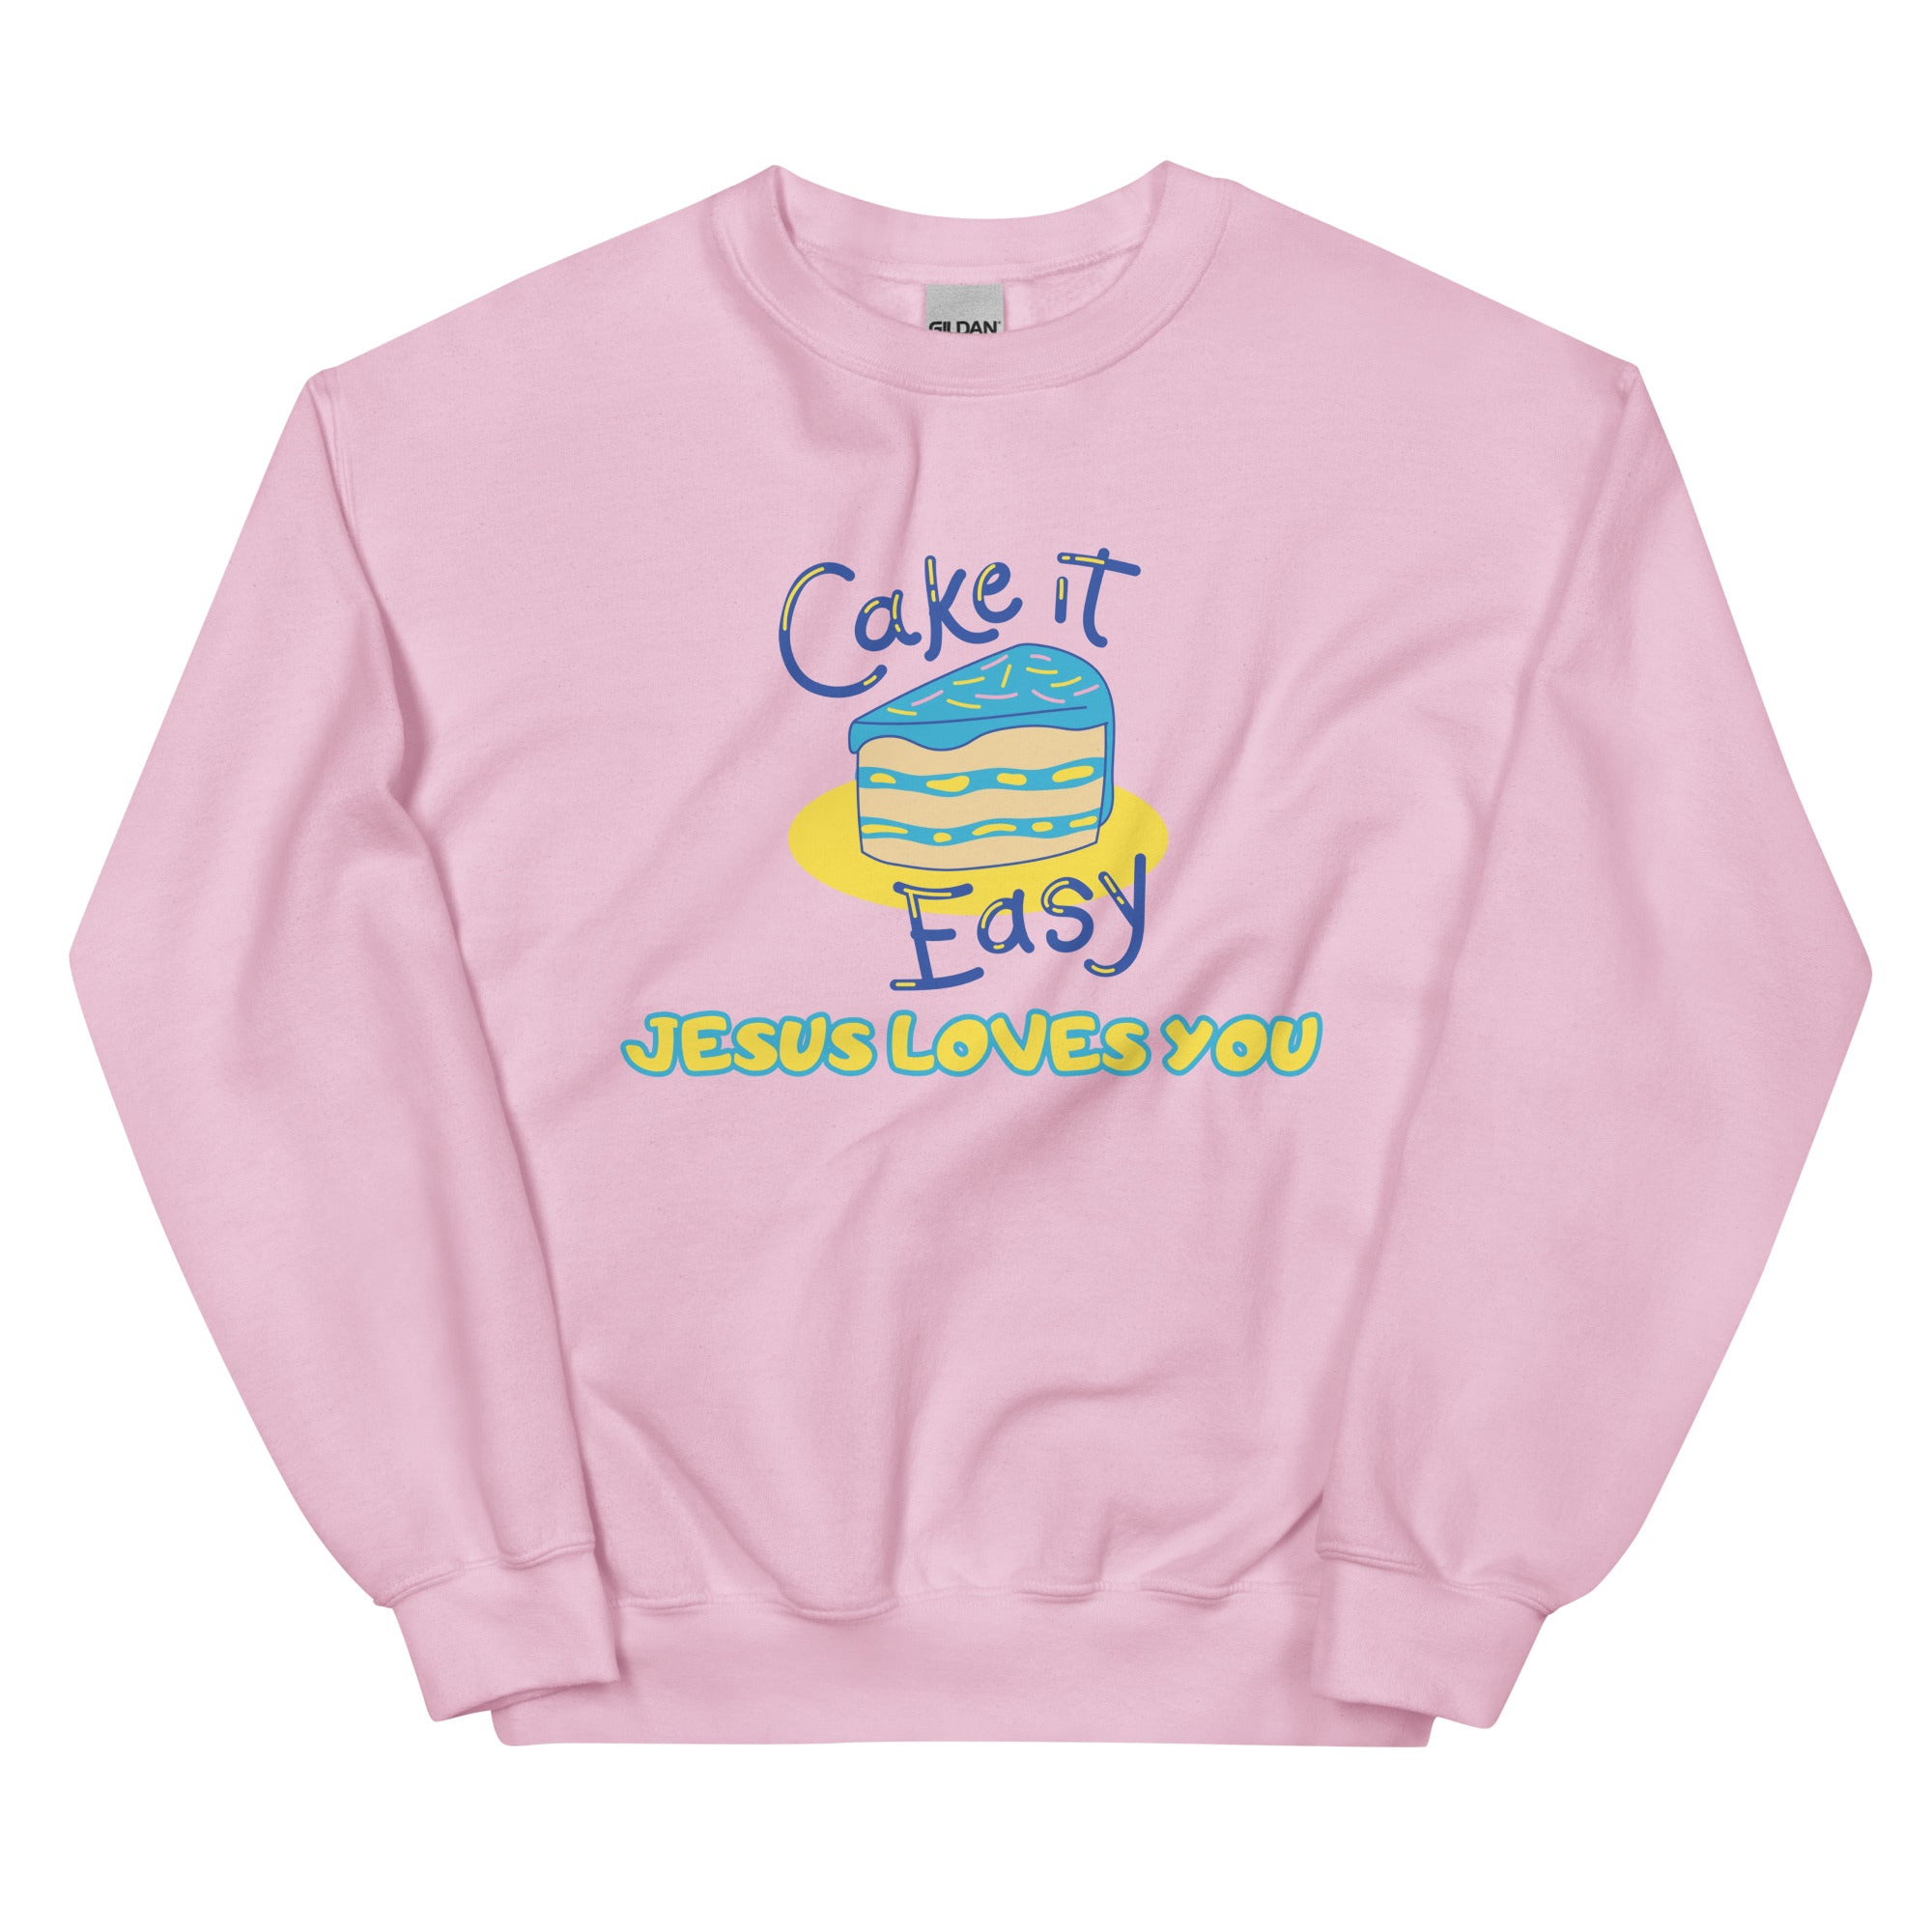 Cake it easy Unisex Sweatshirt